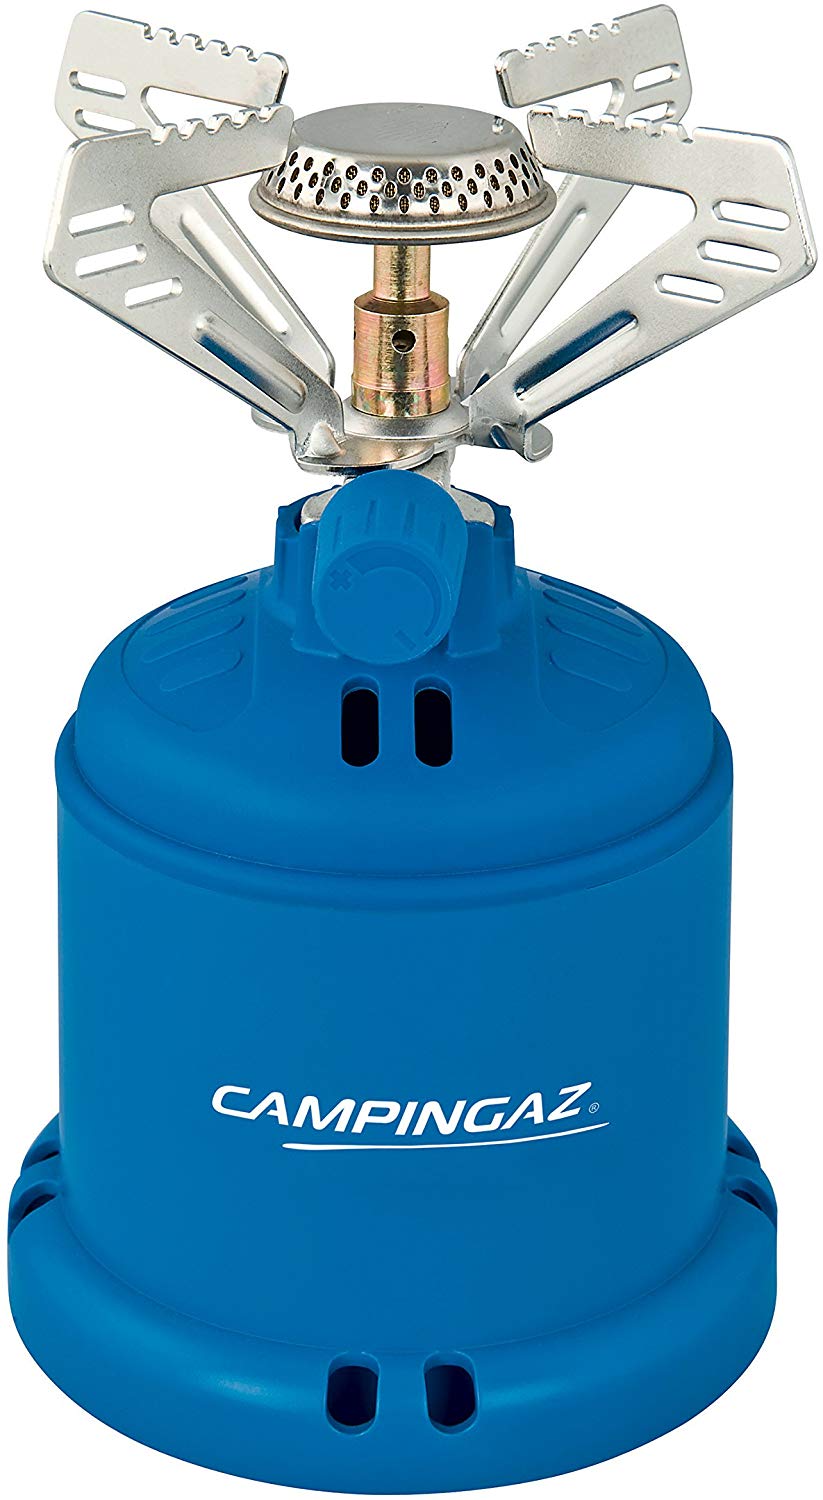 Fornello Camping Gaz 206 - Emporio Degani